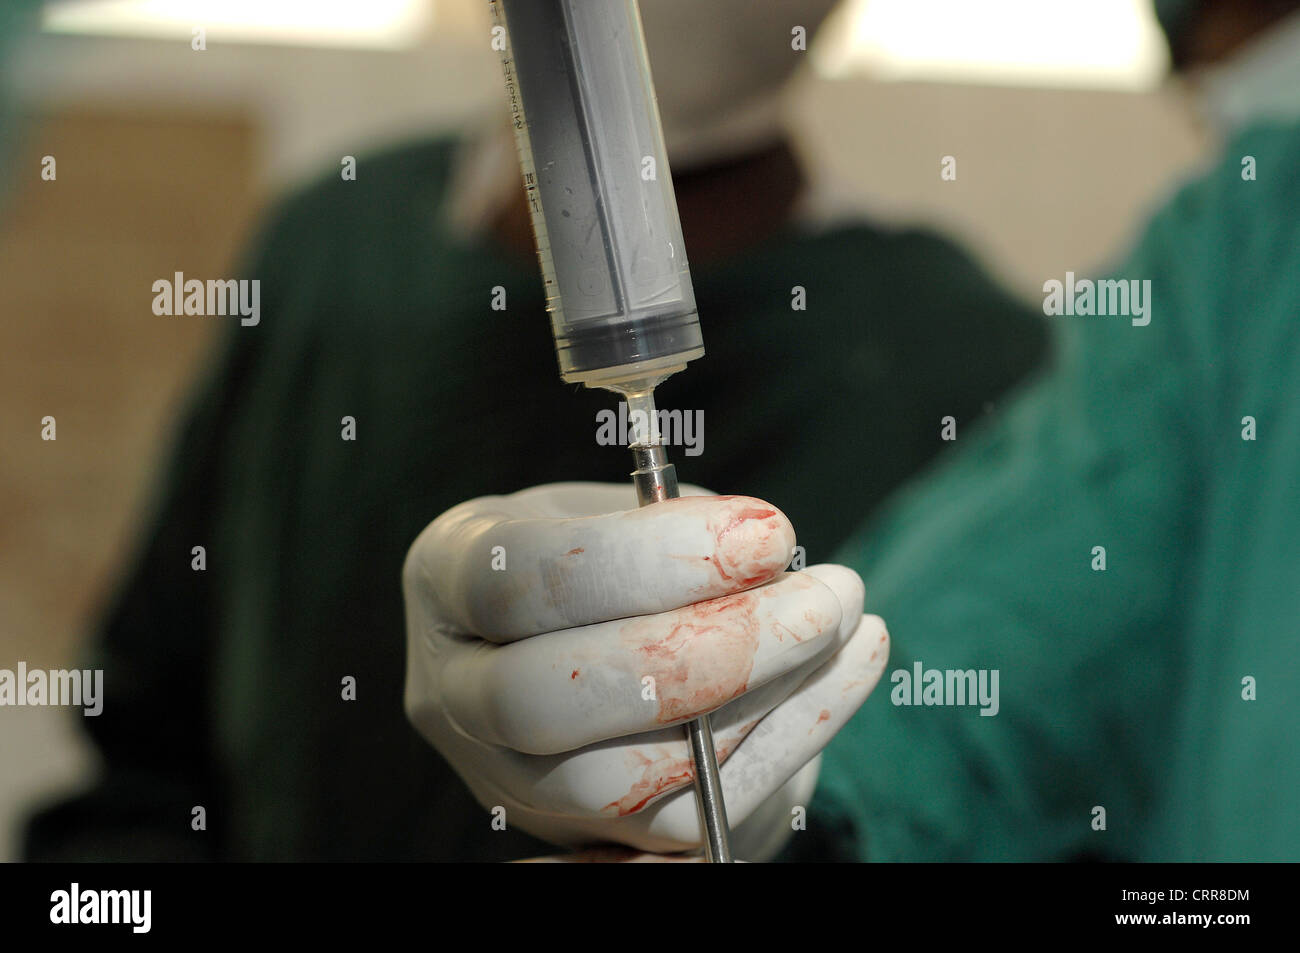 Los cirujanos extracto líquido de una jeringa. Foto de stock